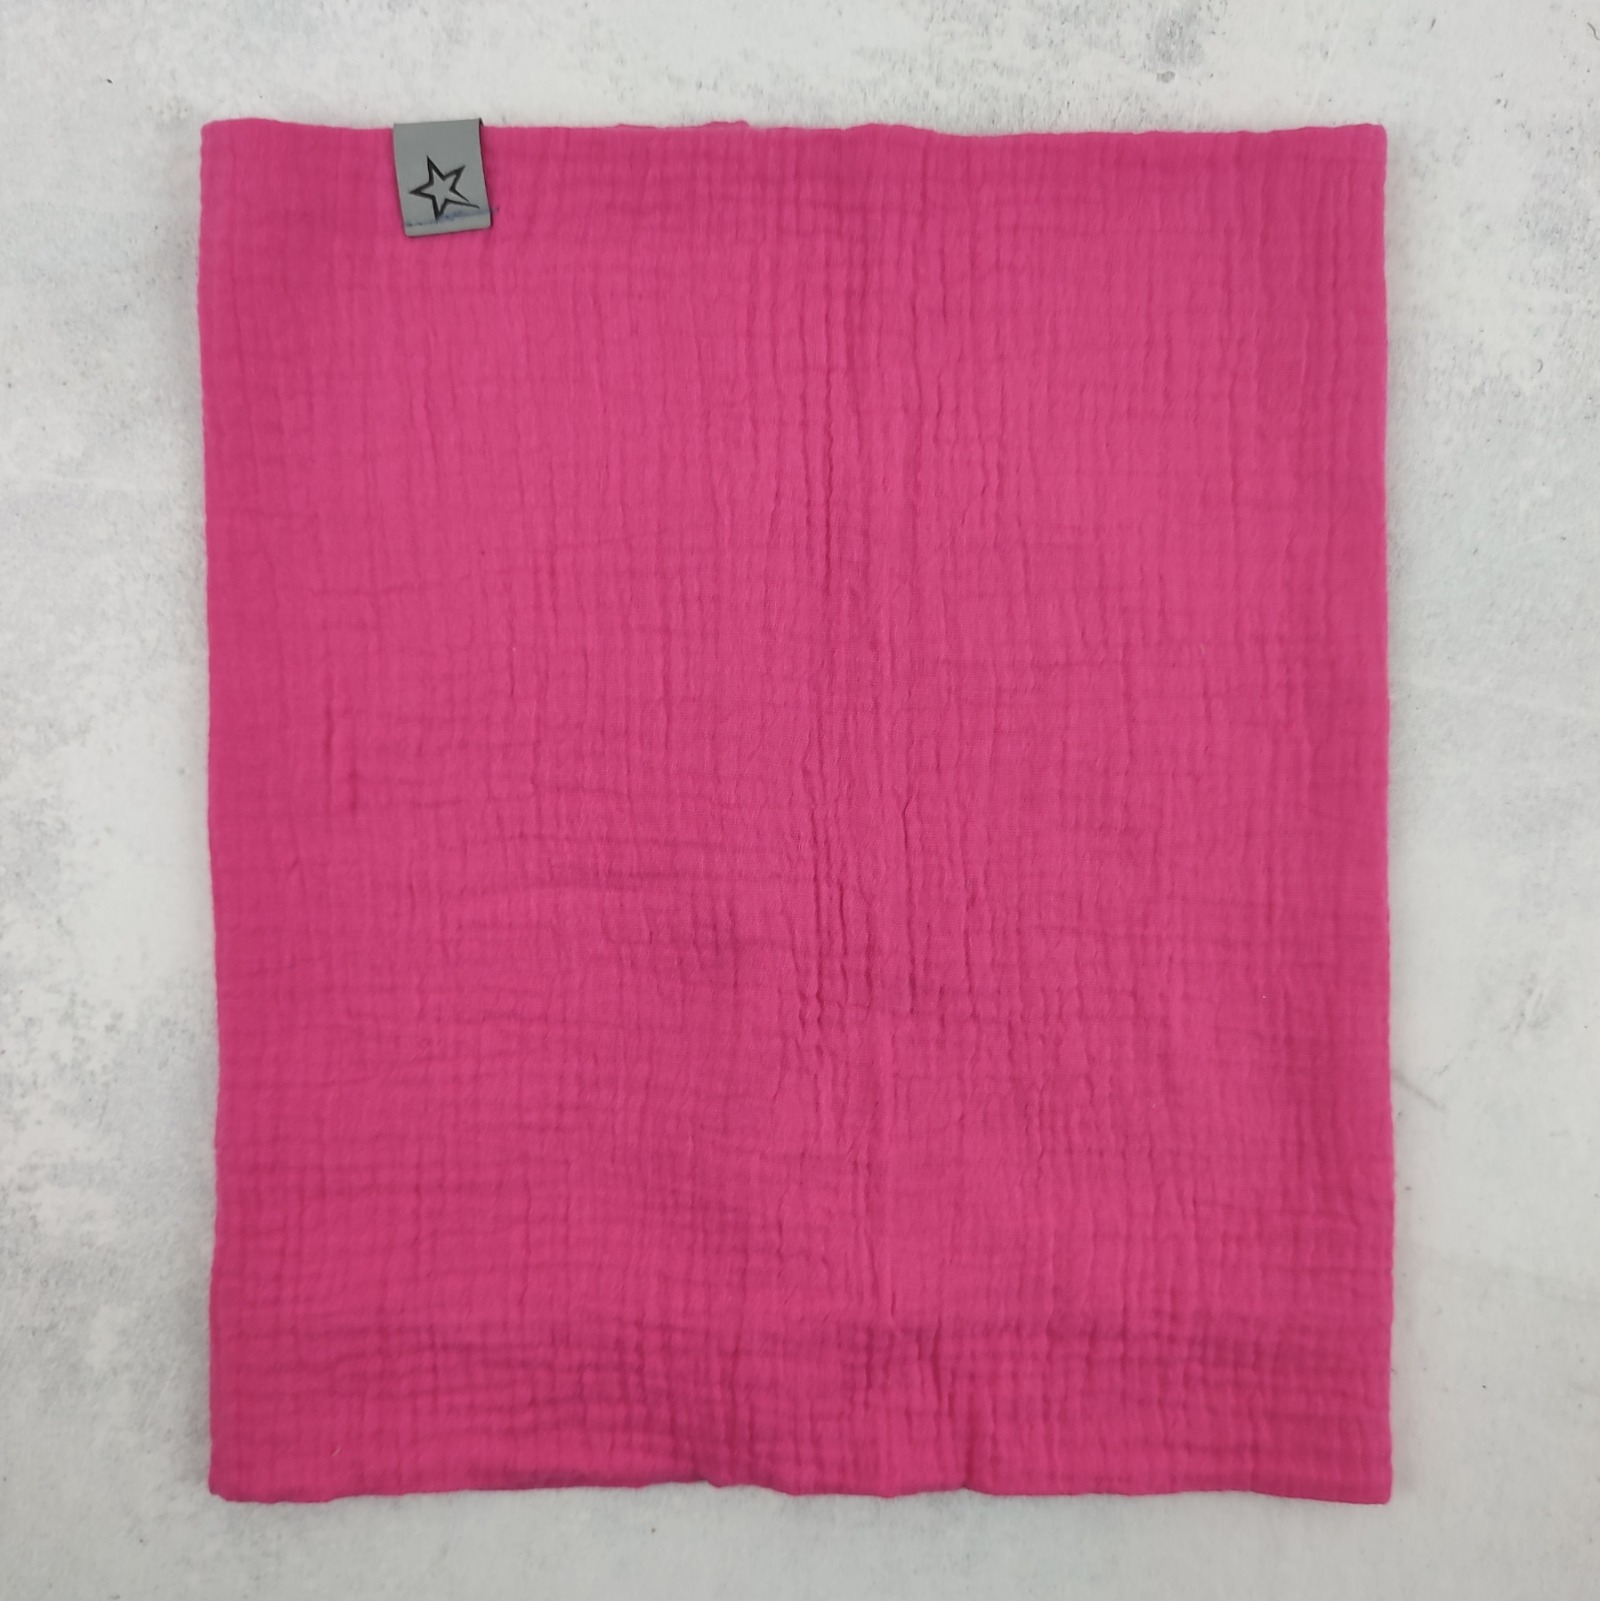 Loop Schlupfschal aus Musselin in pink, Schal für Mädchen Kinder 2